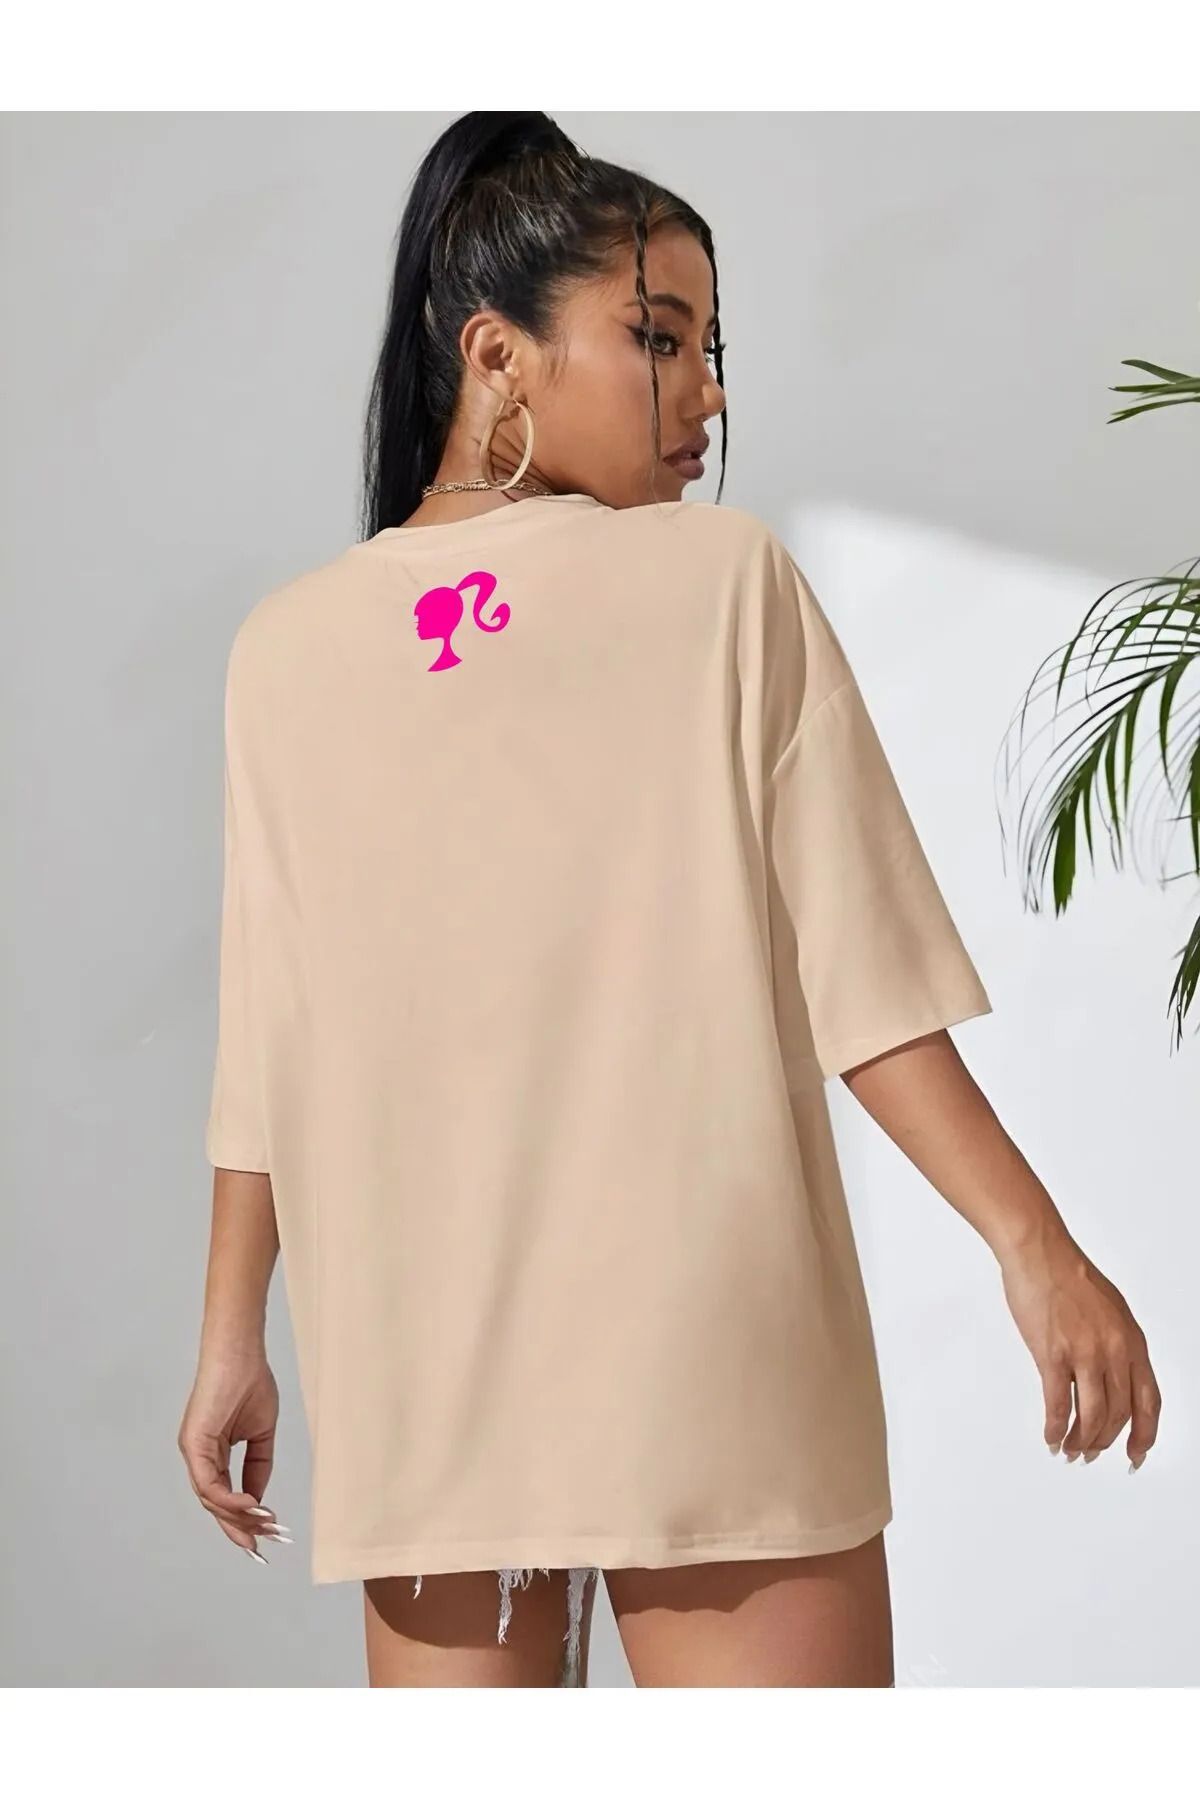 EFFRENATU Yeni Sezon Oversize Barbie Baskılı Pamuklu Penye Kumaş Tişört